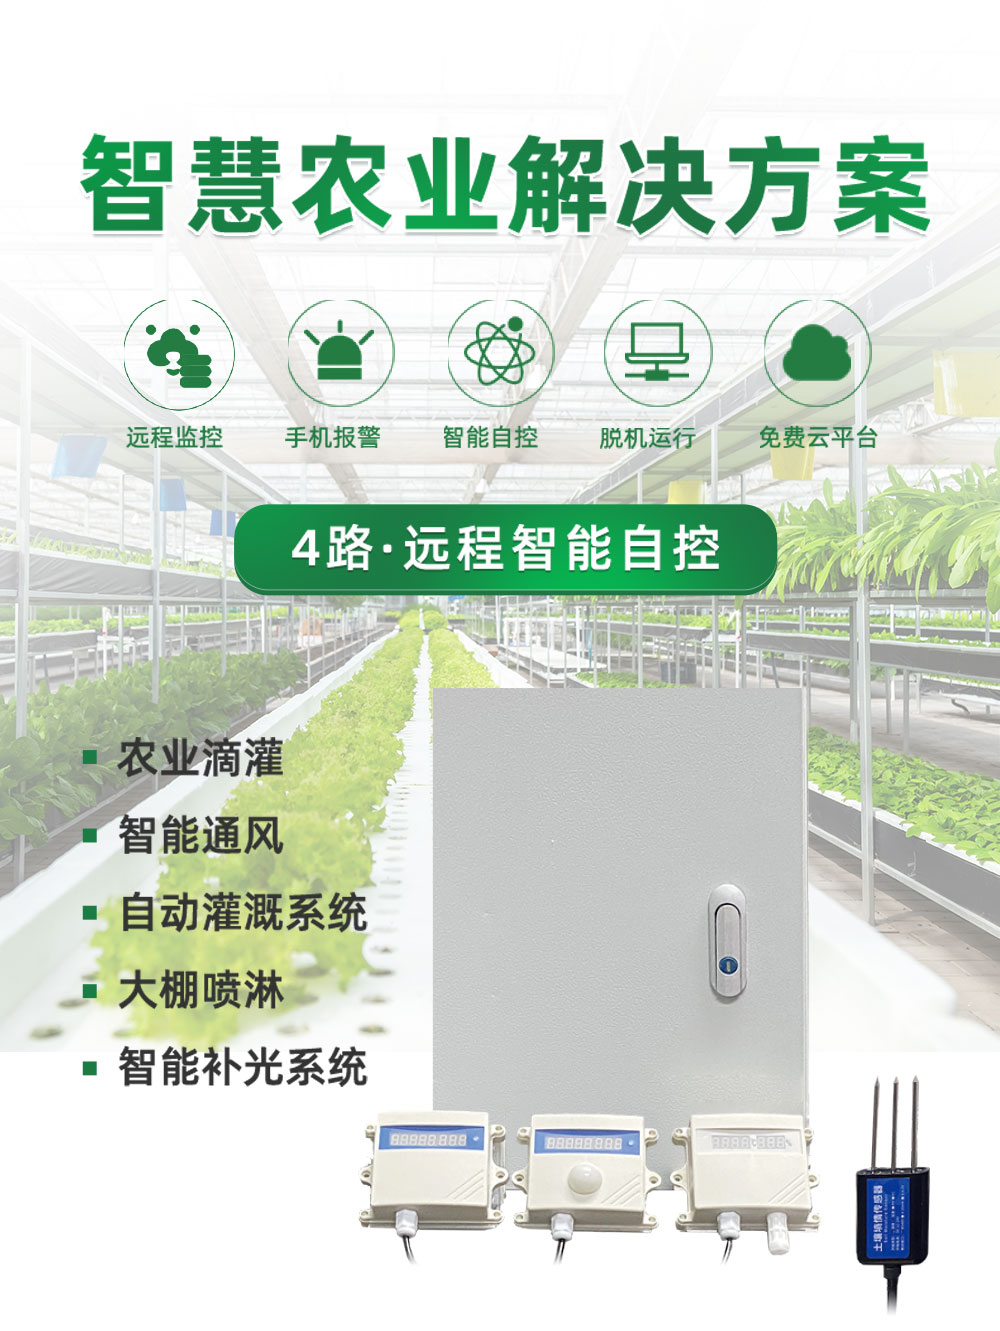 4路智慧农业控制系统基础版